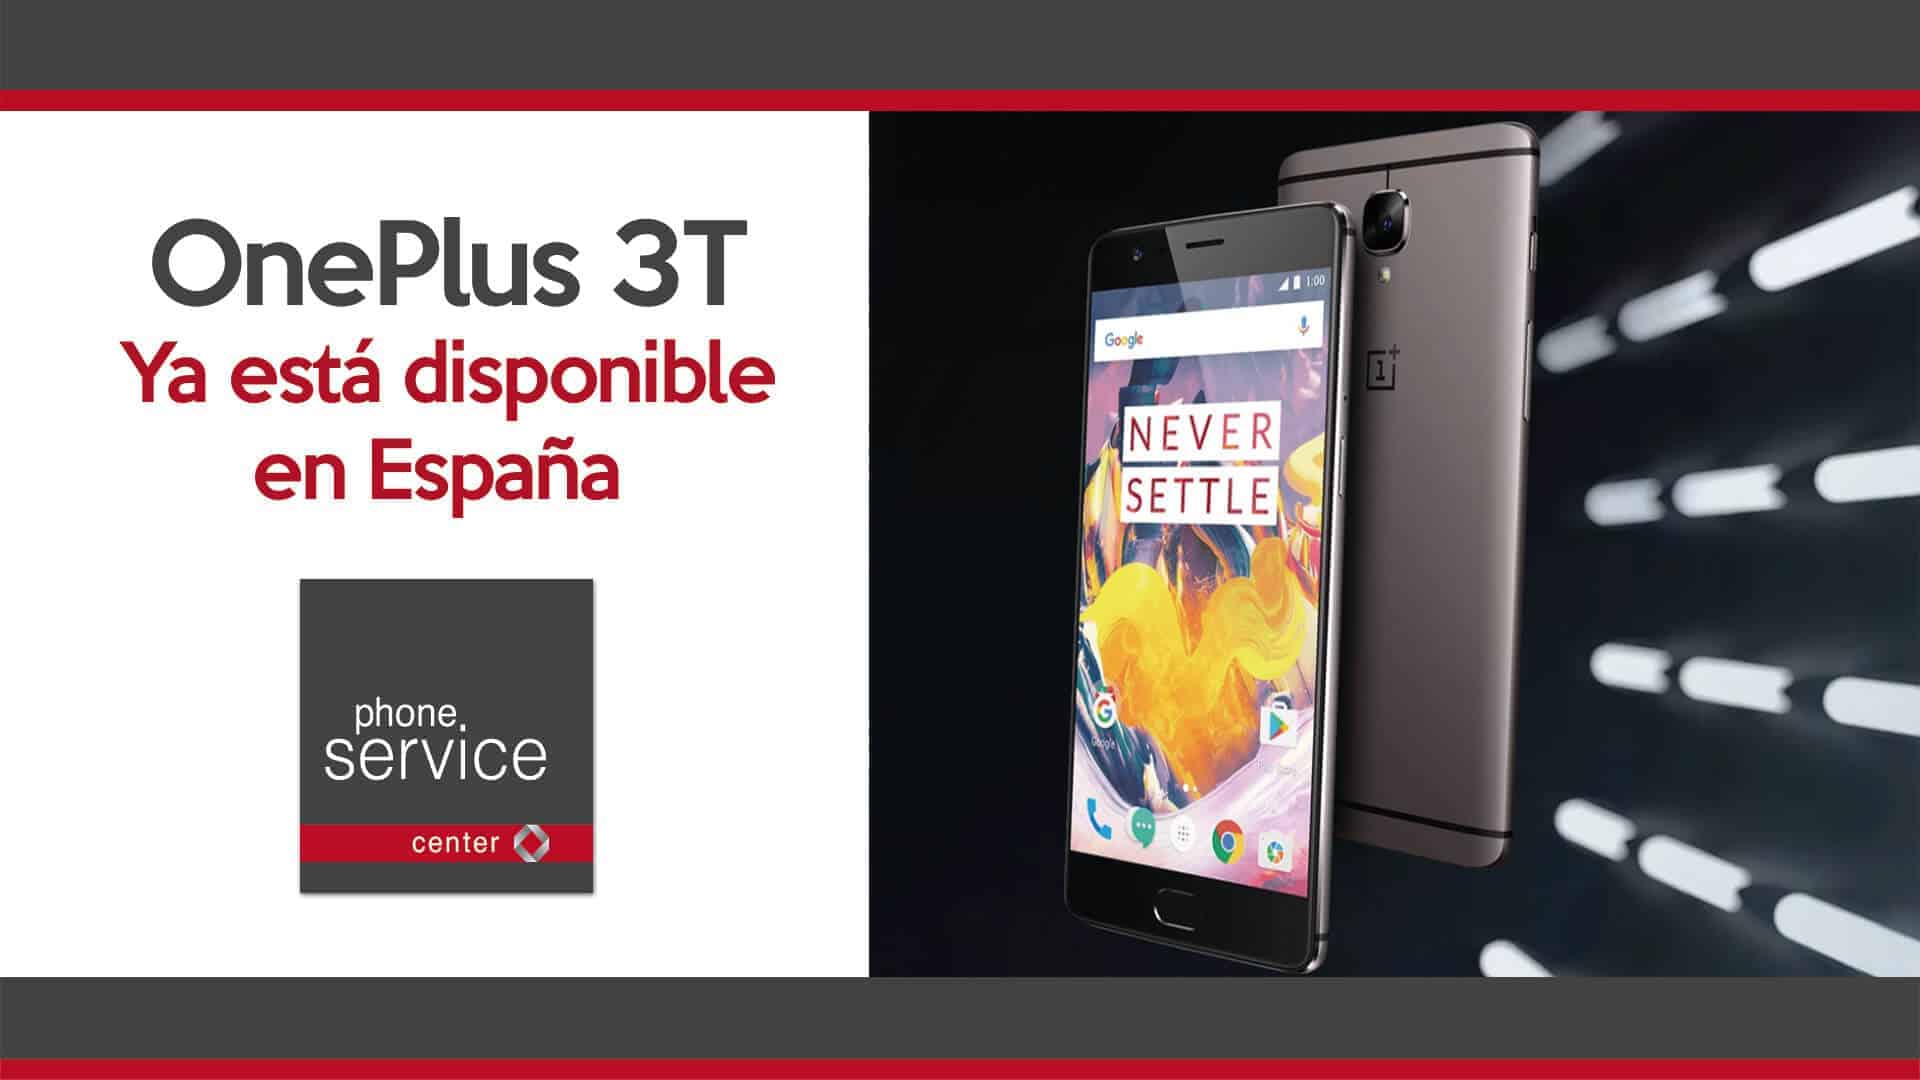 OnePlus 3T disponible en Espana